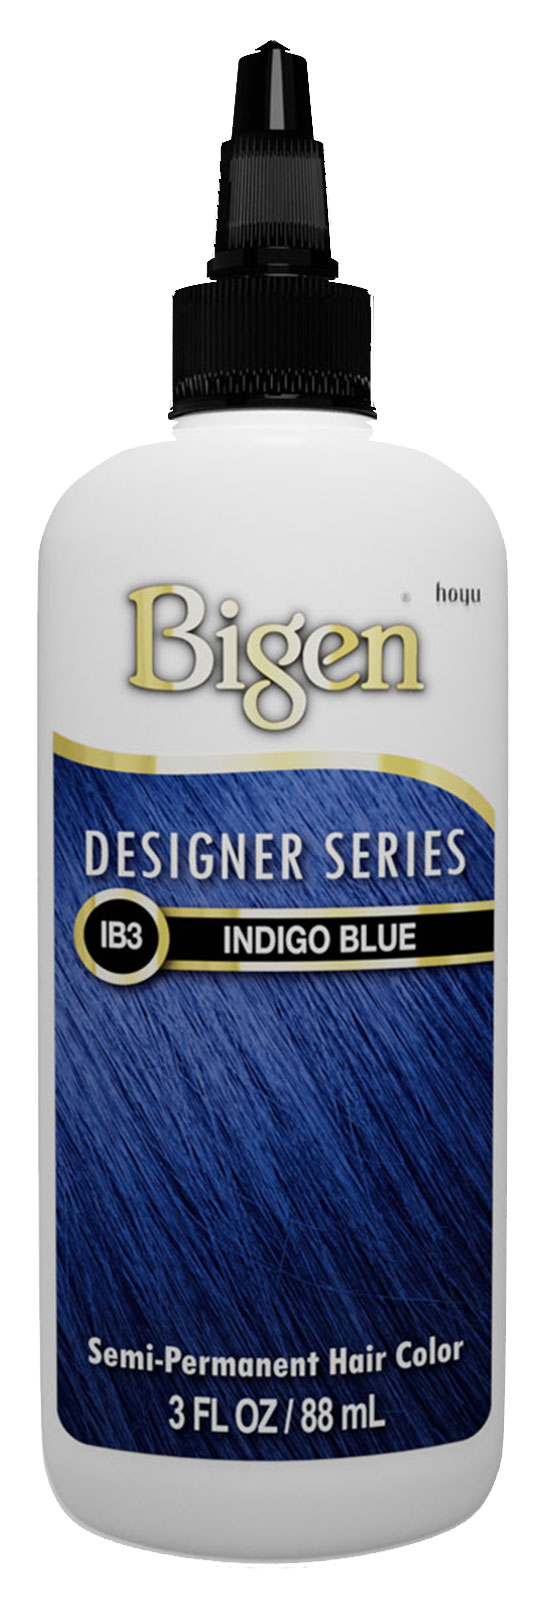 IB3-Inidgo Blue